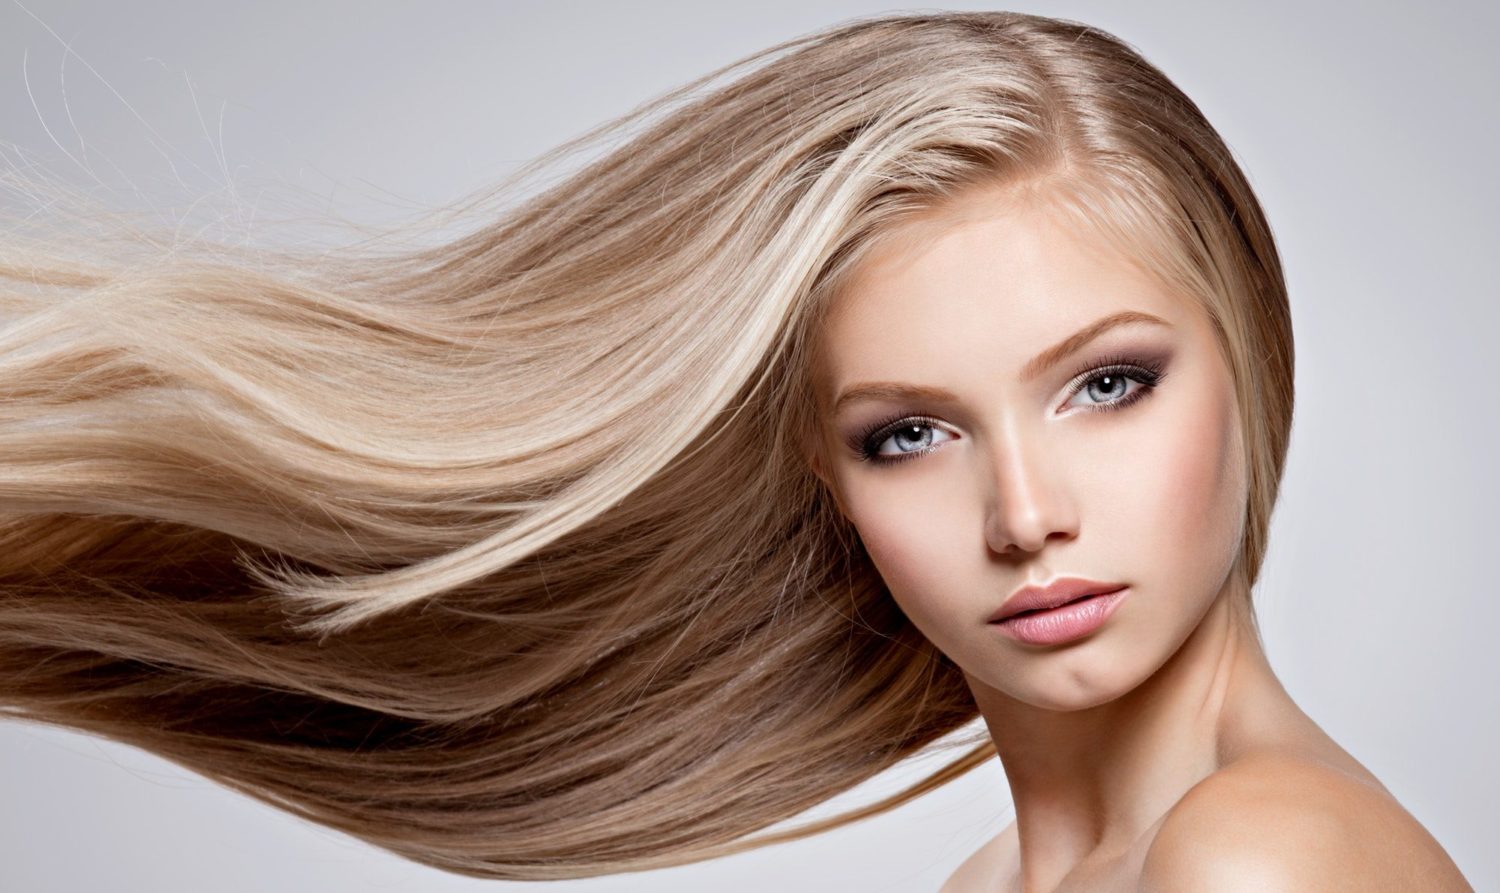 Để có mái tóc khỏe đẹp, dầu xả luôn là một lựa chọn không thể thiếu. Với công dụng dưỡng tóc, giúp phục hồi tóc hư tổn và tăng cường độ bóng mượt, bạn sẽ có một bộ tóc cực kỳ thu hút. Tham khảo hình ảnh về sản phẩm để có sự lựa chọn đúng đắn.